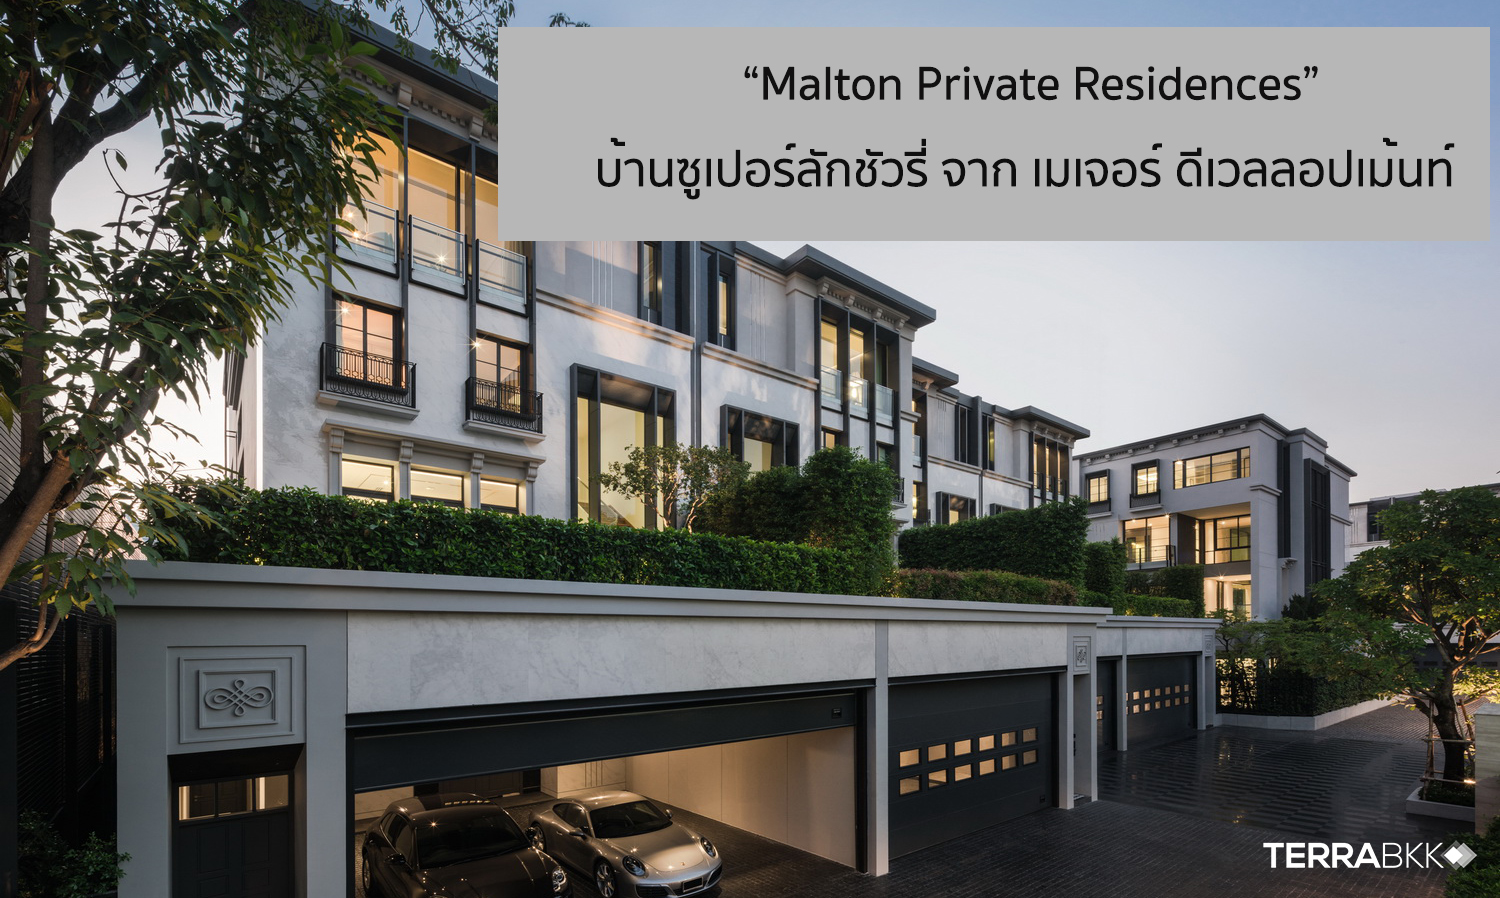 เมเจอร์ ดีเวลลอปเม้นท์ เปิดตัวบ้านซูเปอร์ลักชัวรี่ “Malton Private Residences” ผสานทุกการอยู่อาศัยอย่างลงตัวย่านสุขุมวิท-อารีย์